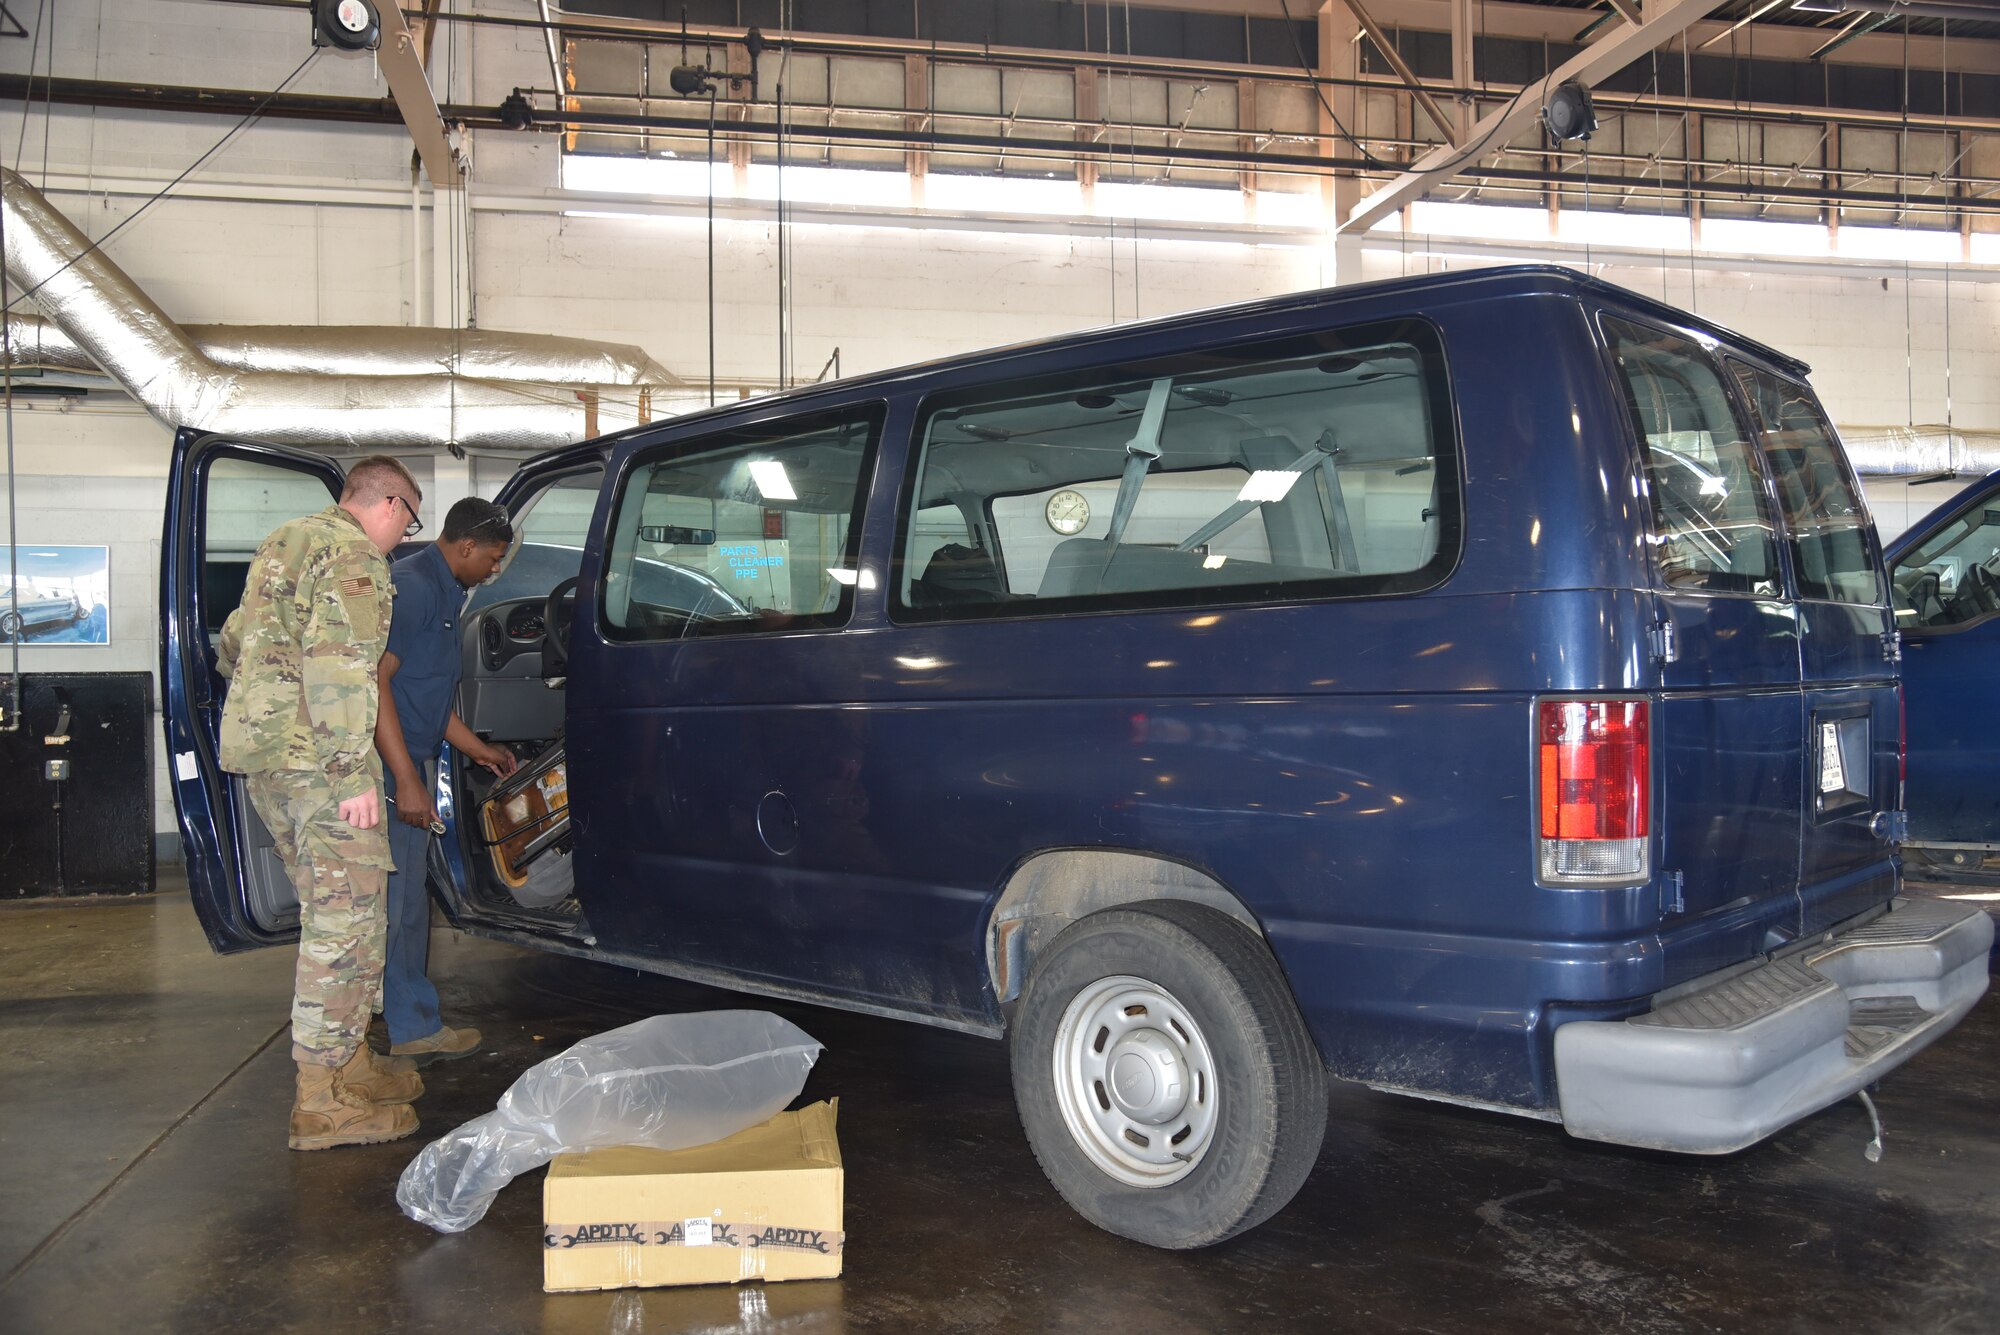 A man in blue coveralls fixes a mini van